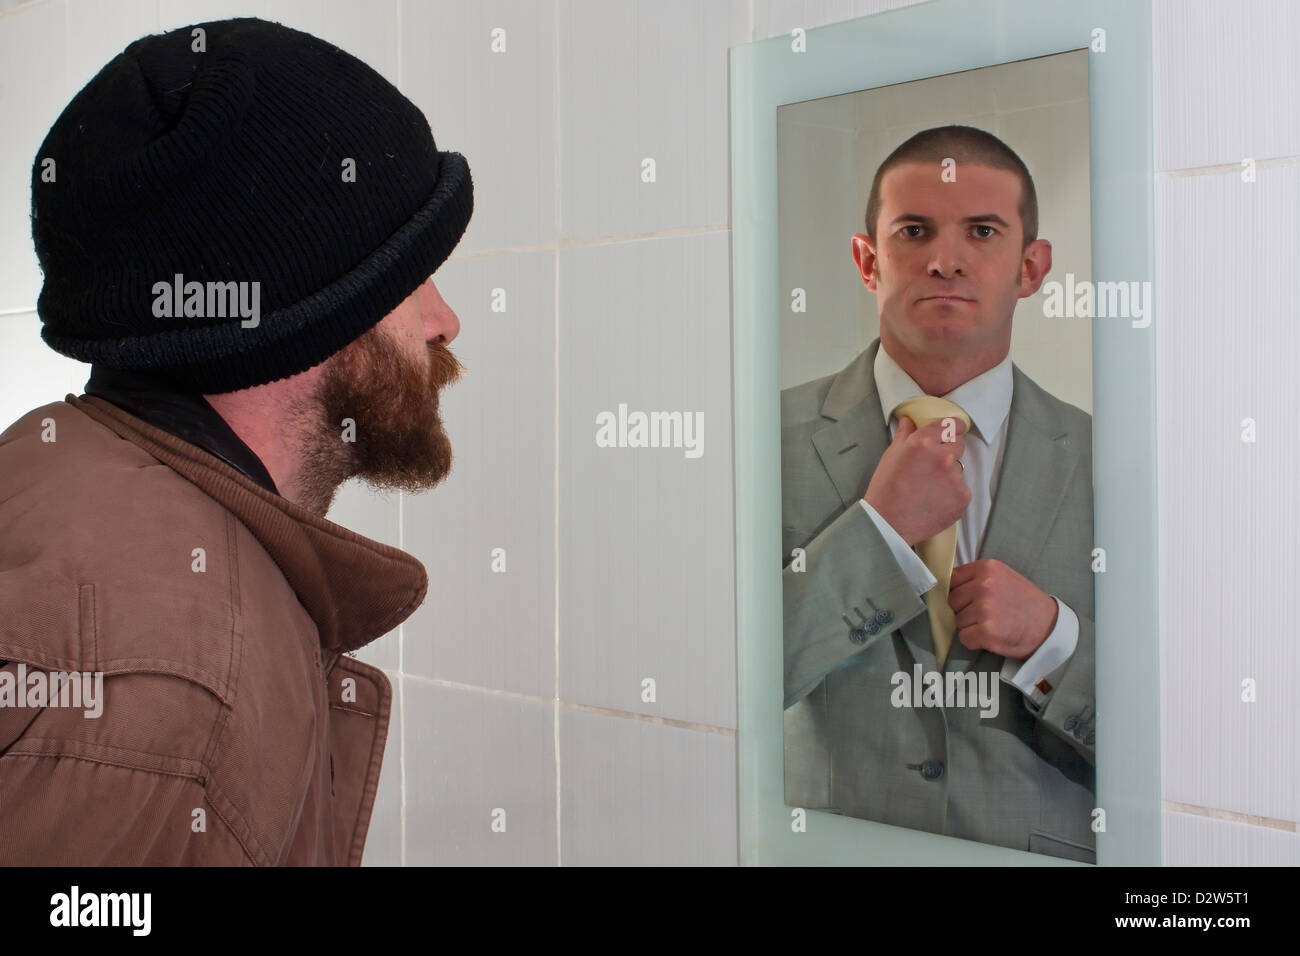 Wandern Sie in den Spiegel zu schauen und zu sehen, einen Business-Mann starrte zurück in die Reflexion Stockfoto